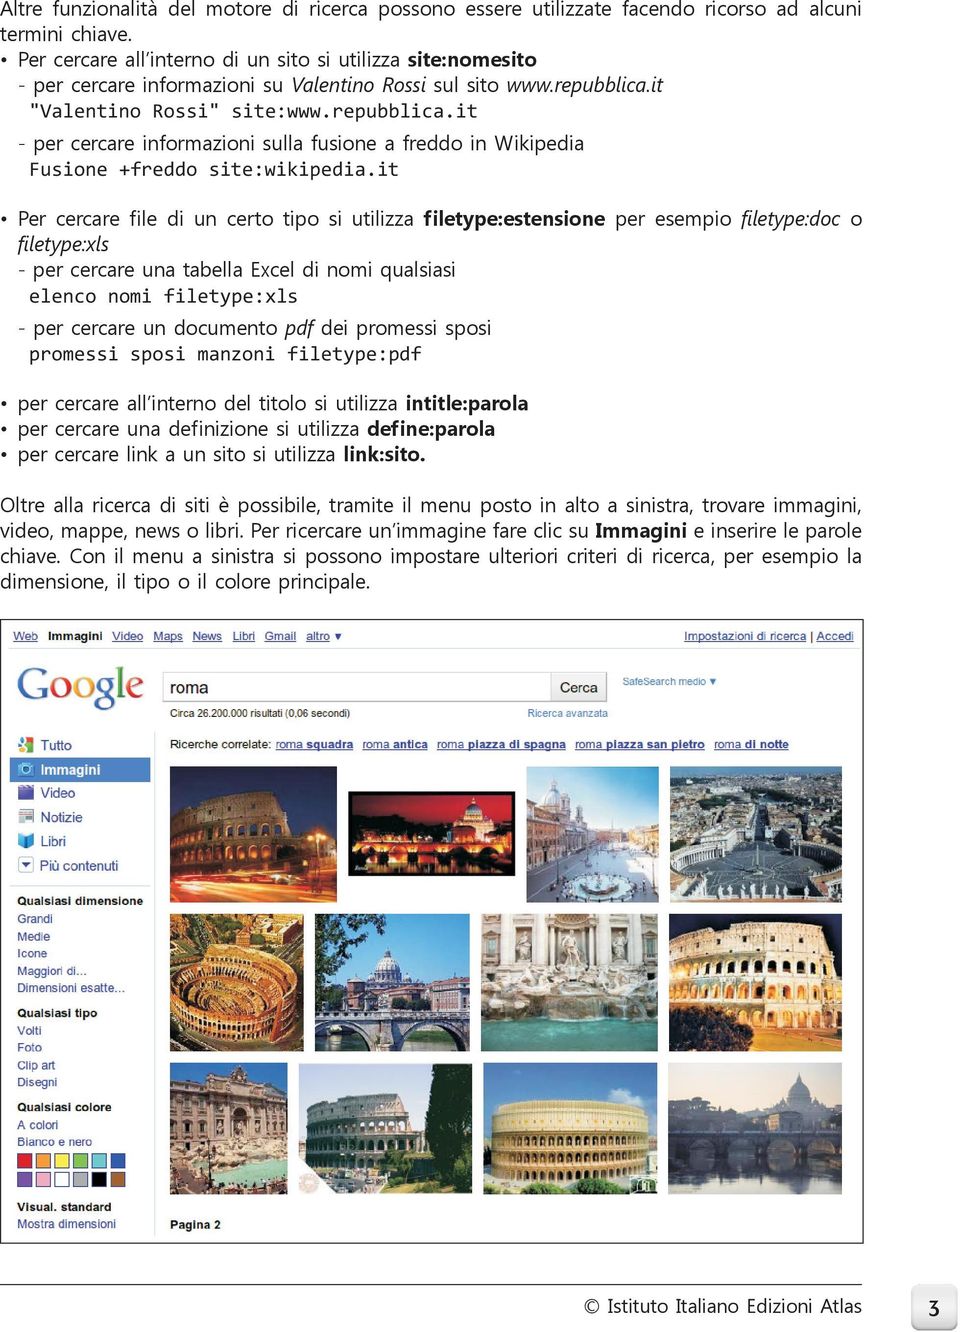 it "Valentino Rossi" site:www.repubblica.it - per cercare informazioni sulla fusione a freddo in Wikipedia Fusione +freddo site:wikipedia.